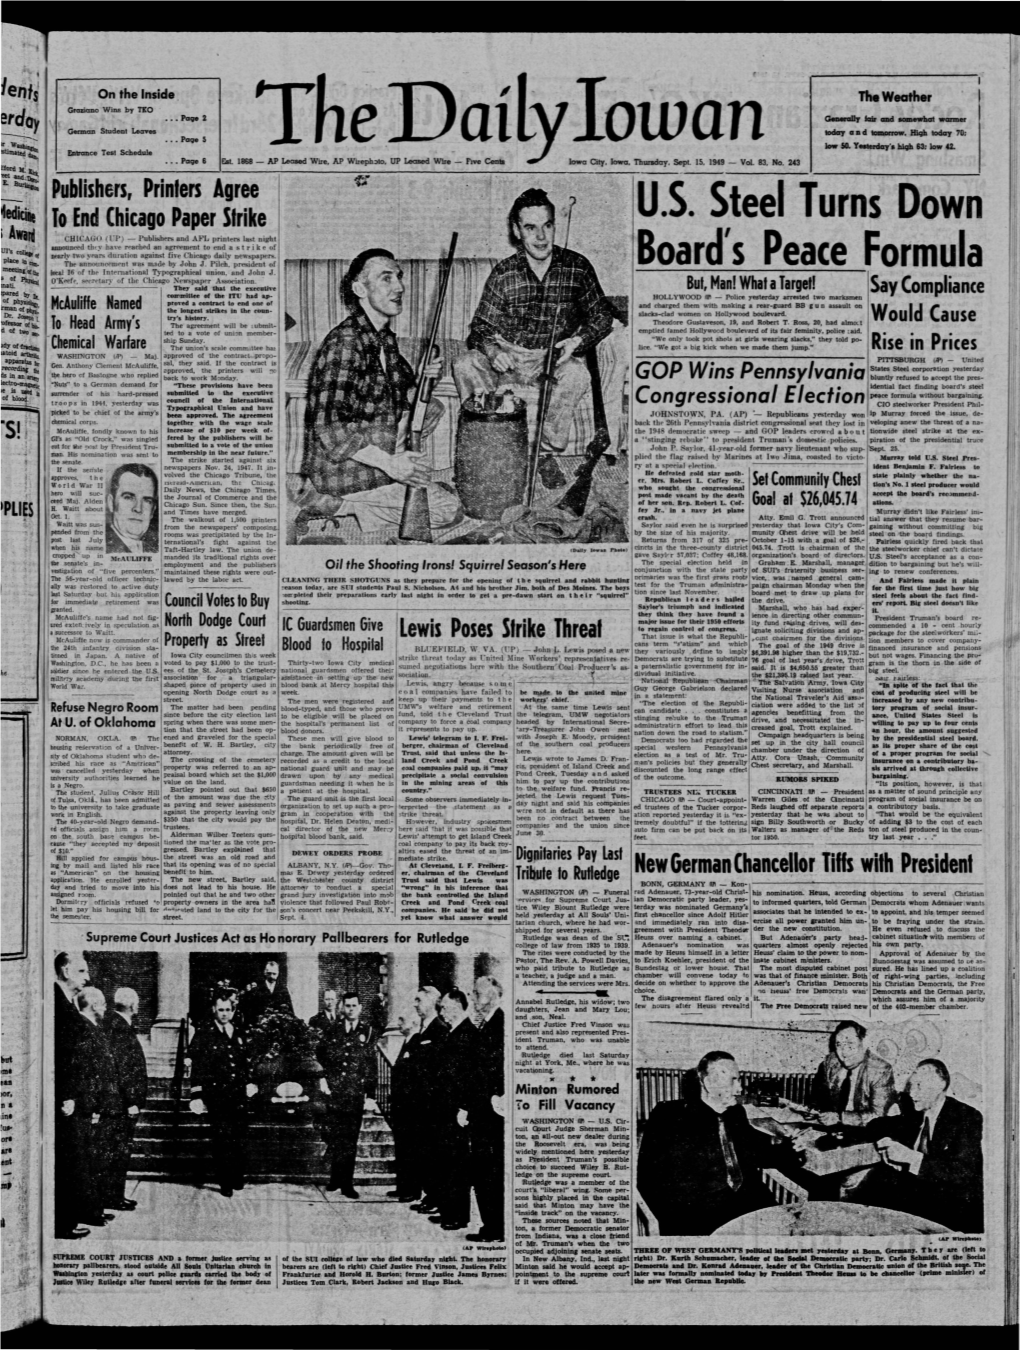 Daily Iowan (Iowa City, Iowa), 1949-09-15